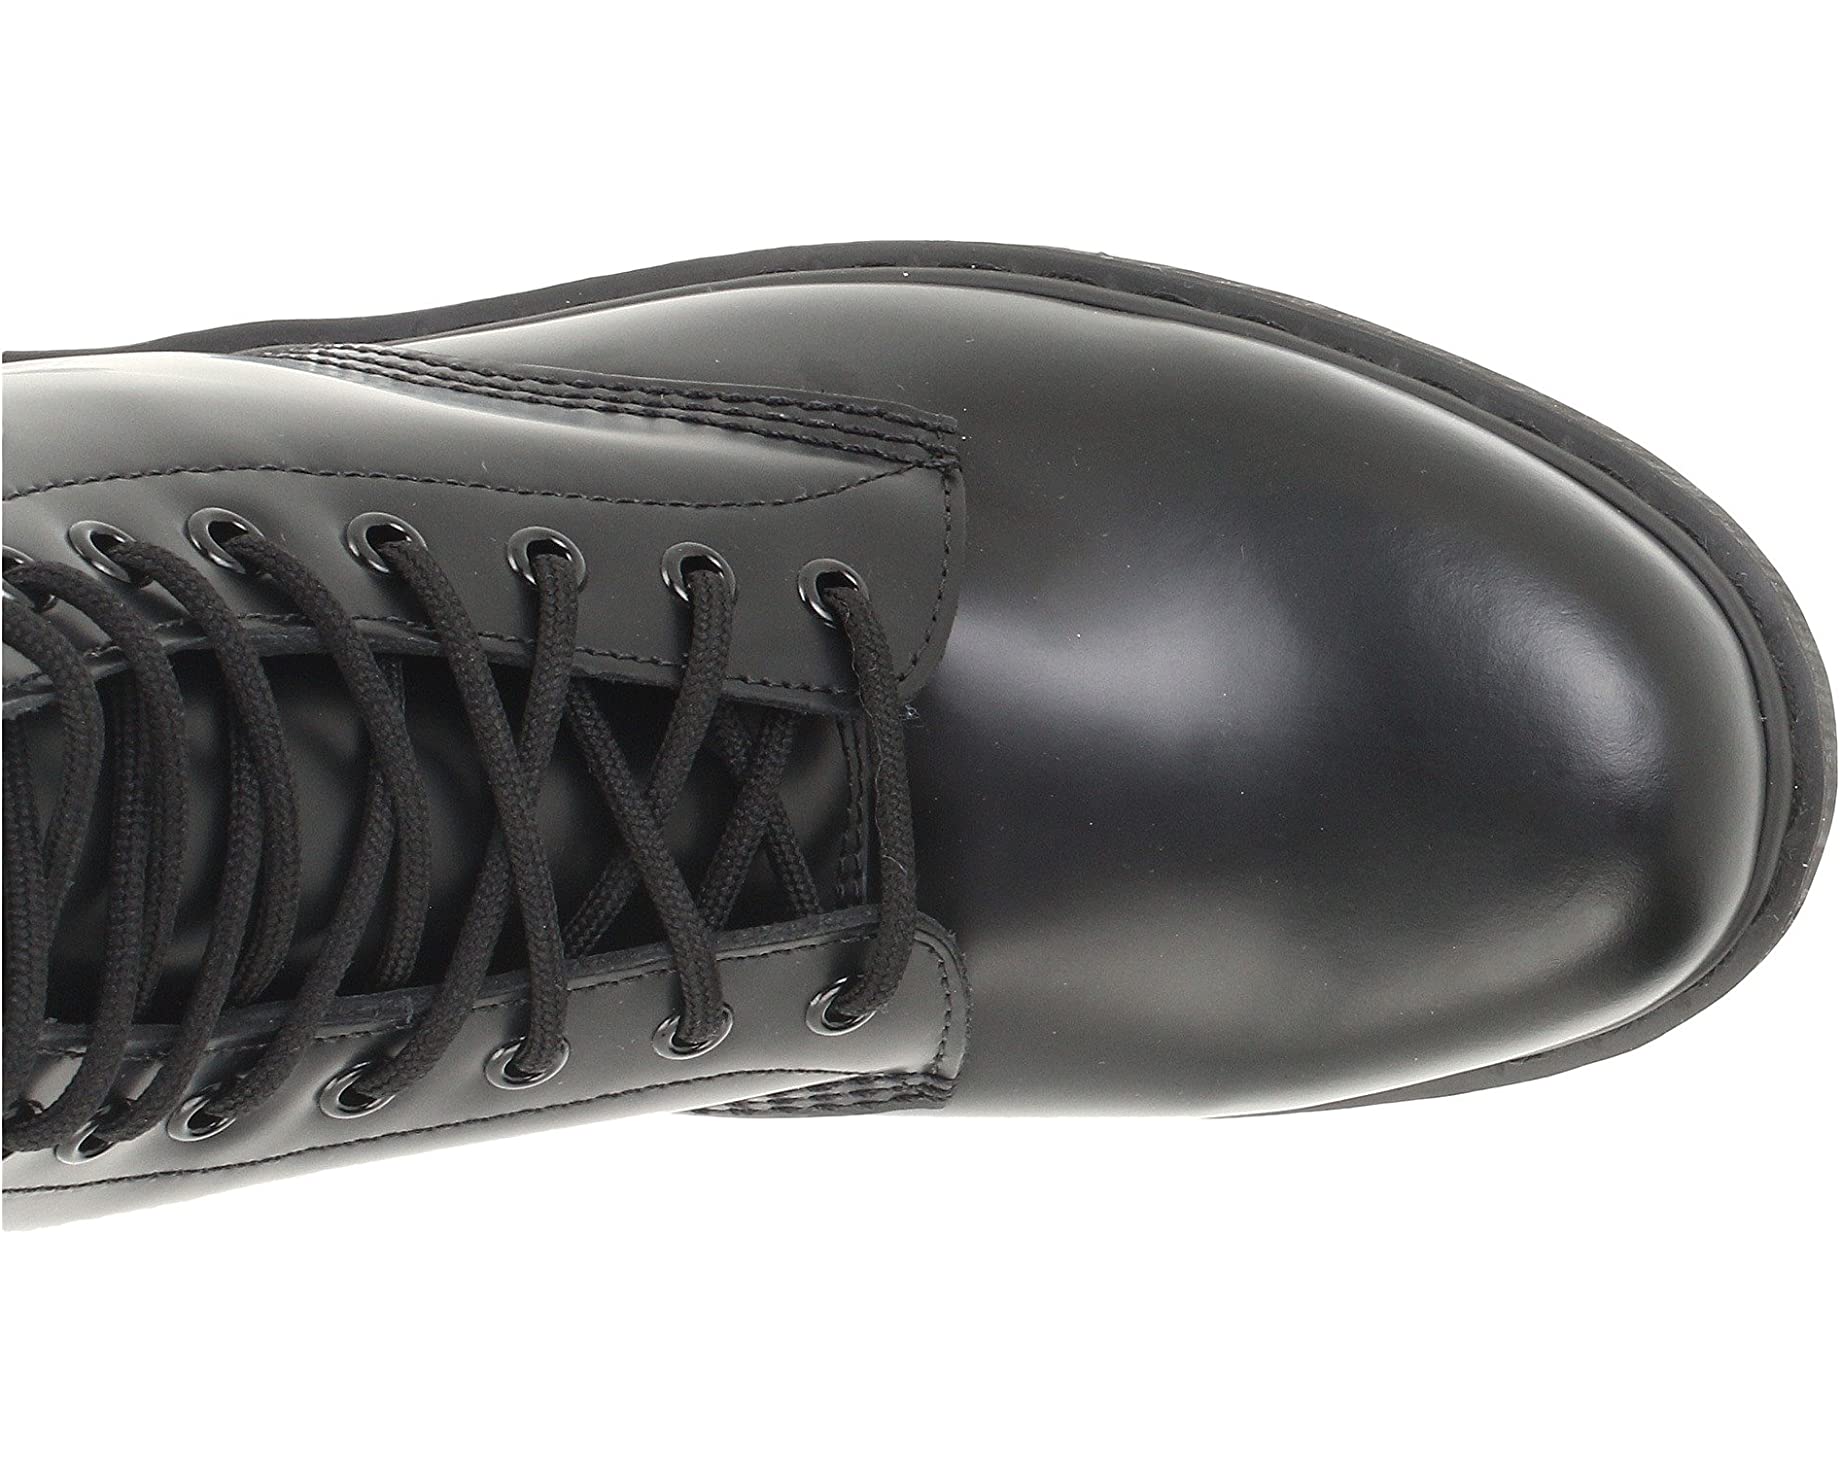 Ботинки 1460 Mono Boot Dr. Martens, черный ботинки dr martens 1460 nappa standard 11822002 кожаные высокие классика черные 40